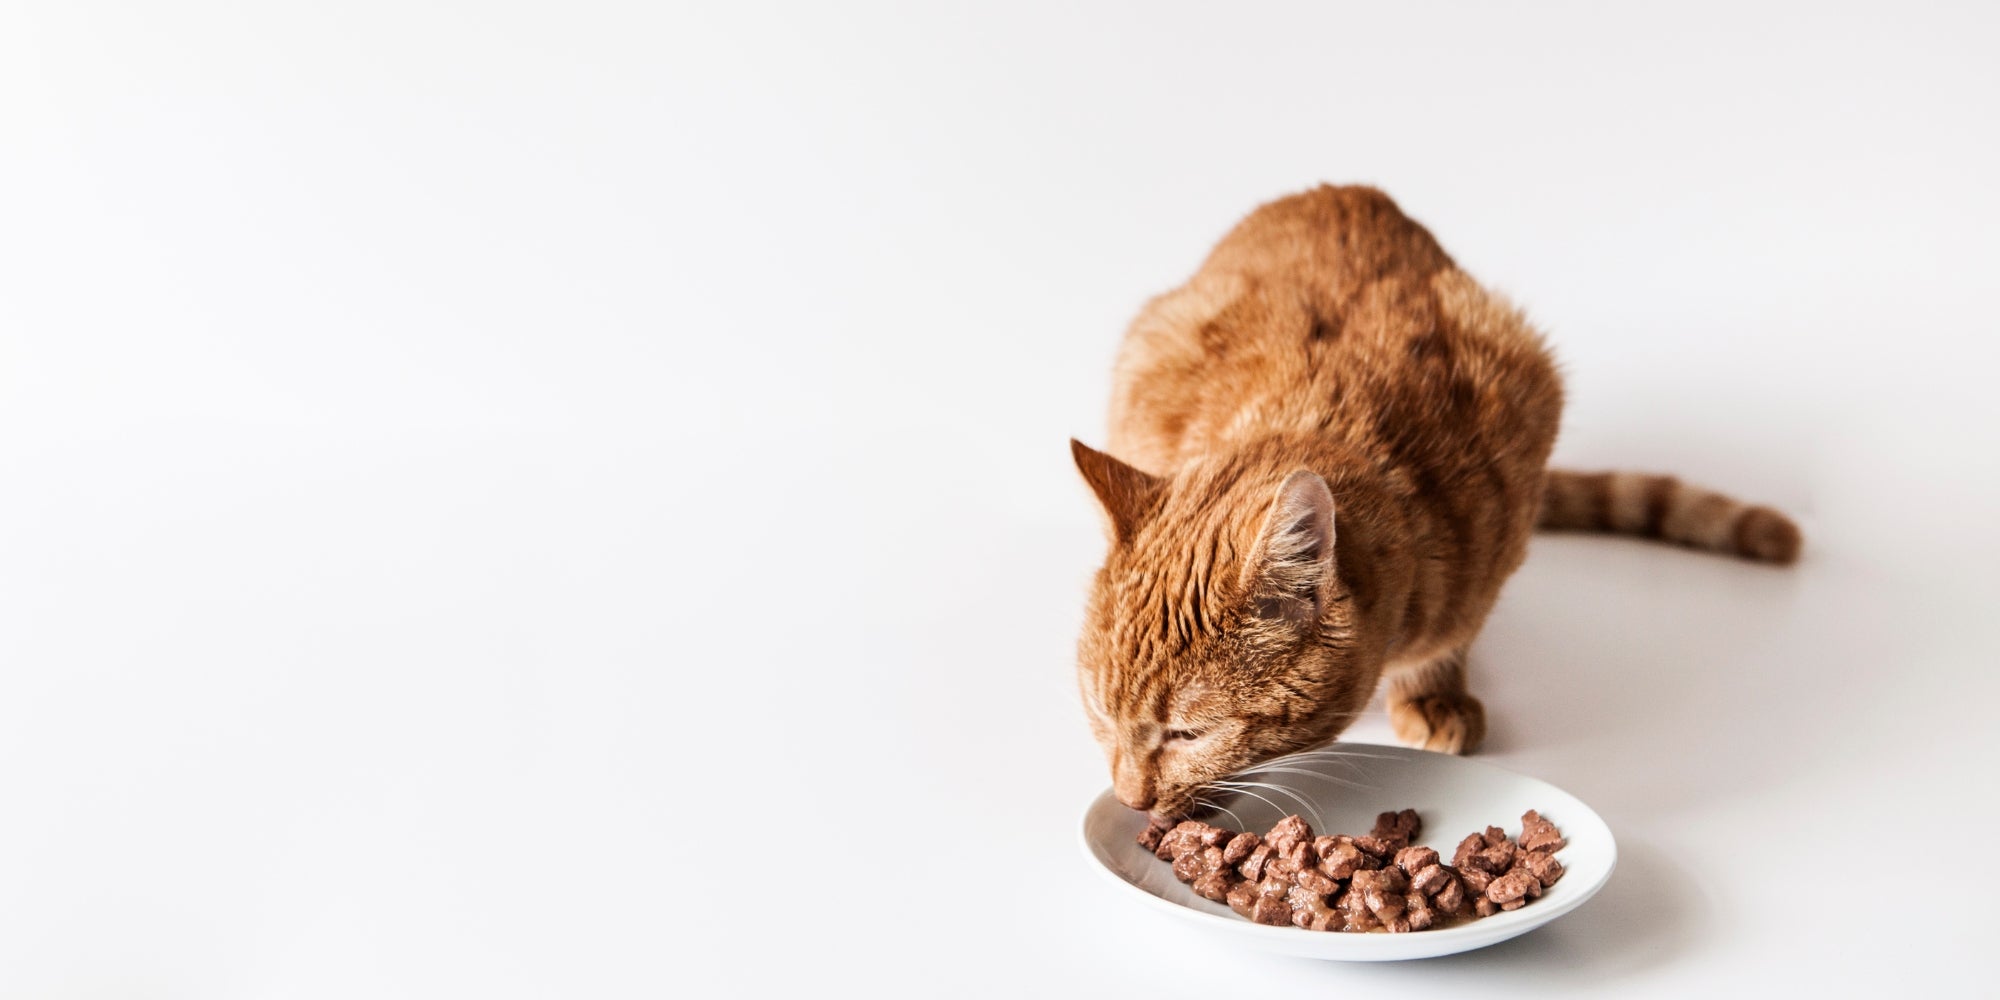 Ginger Cat comiendo mojado su comida